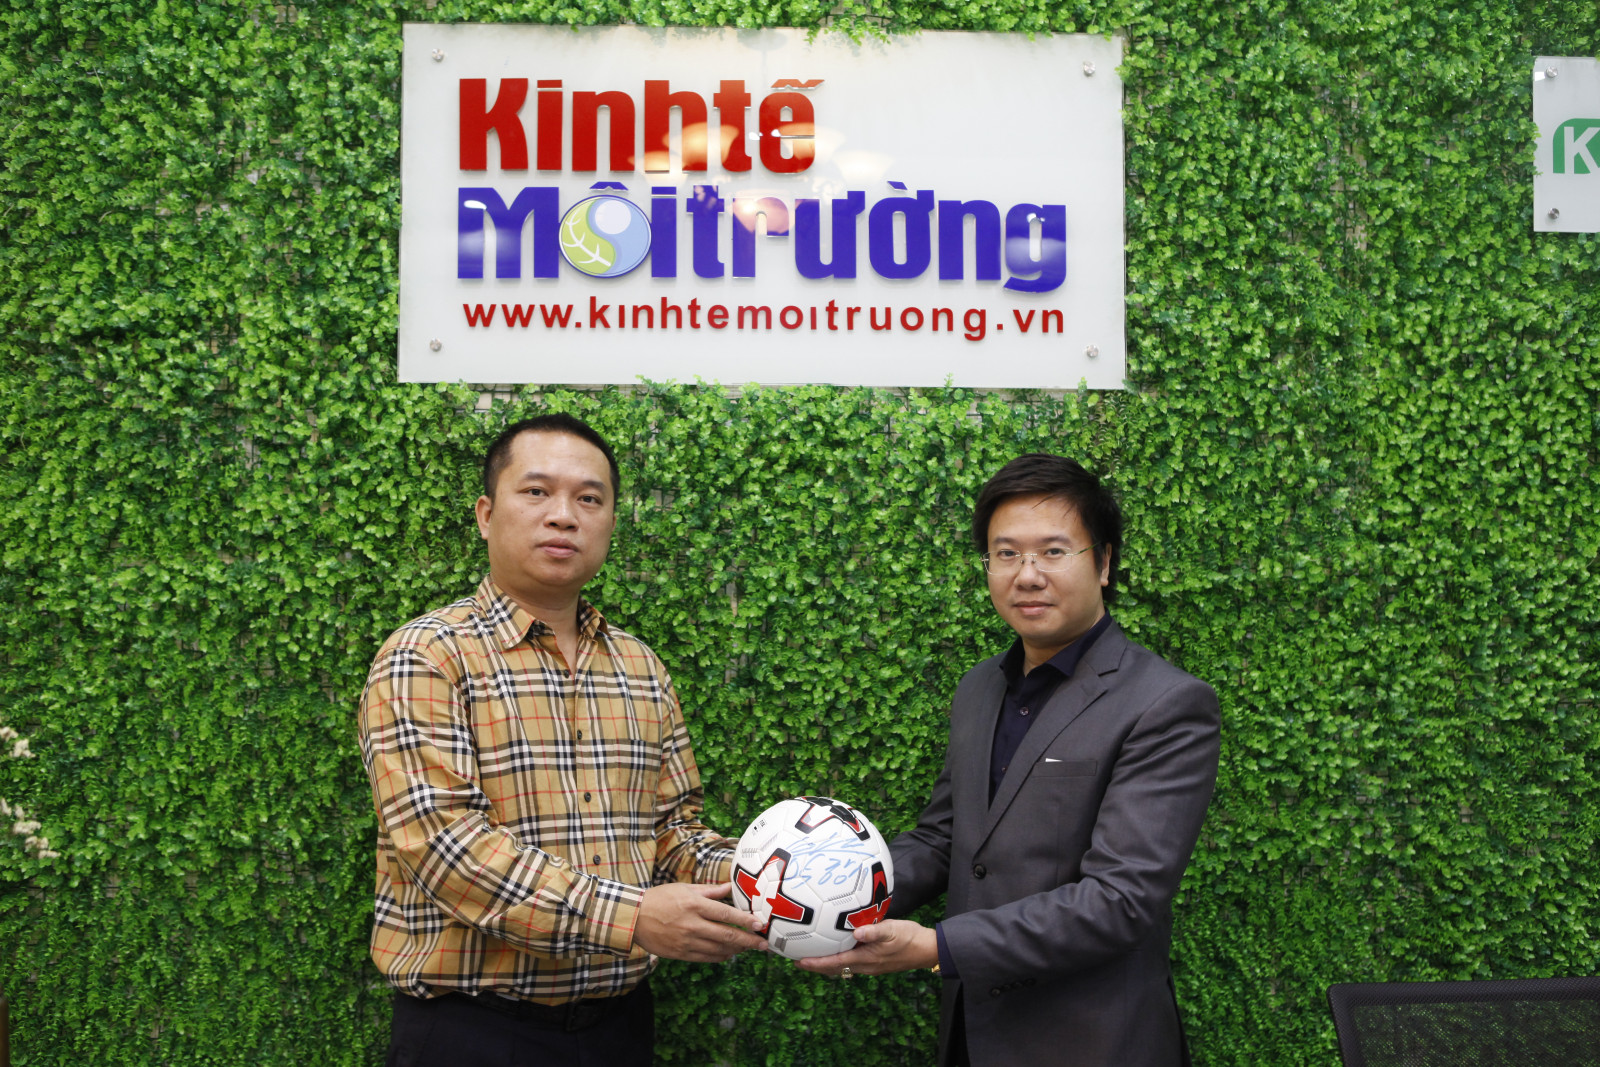  Ông Hoàng Tùng, đại diện Ban Đối ngoại Trung ương trao tặng bóng có chữ ký của HLV Park Hang-seo cho BTC Giải bóng đá Kinh tế Môi trường lần I-2020. Ảnh: Đức Giang.